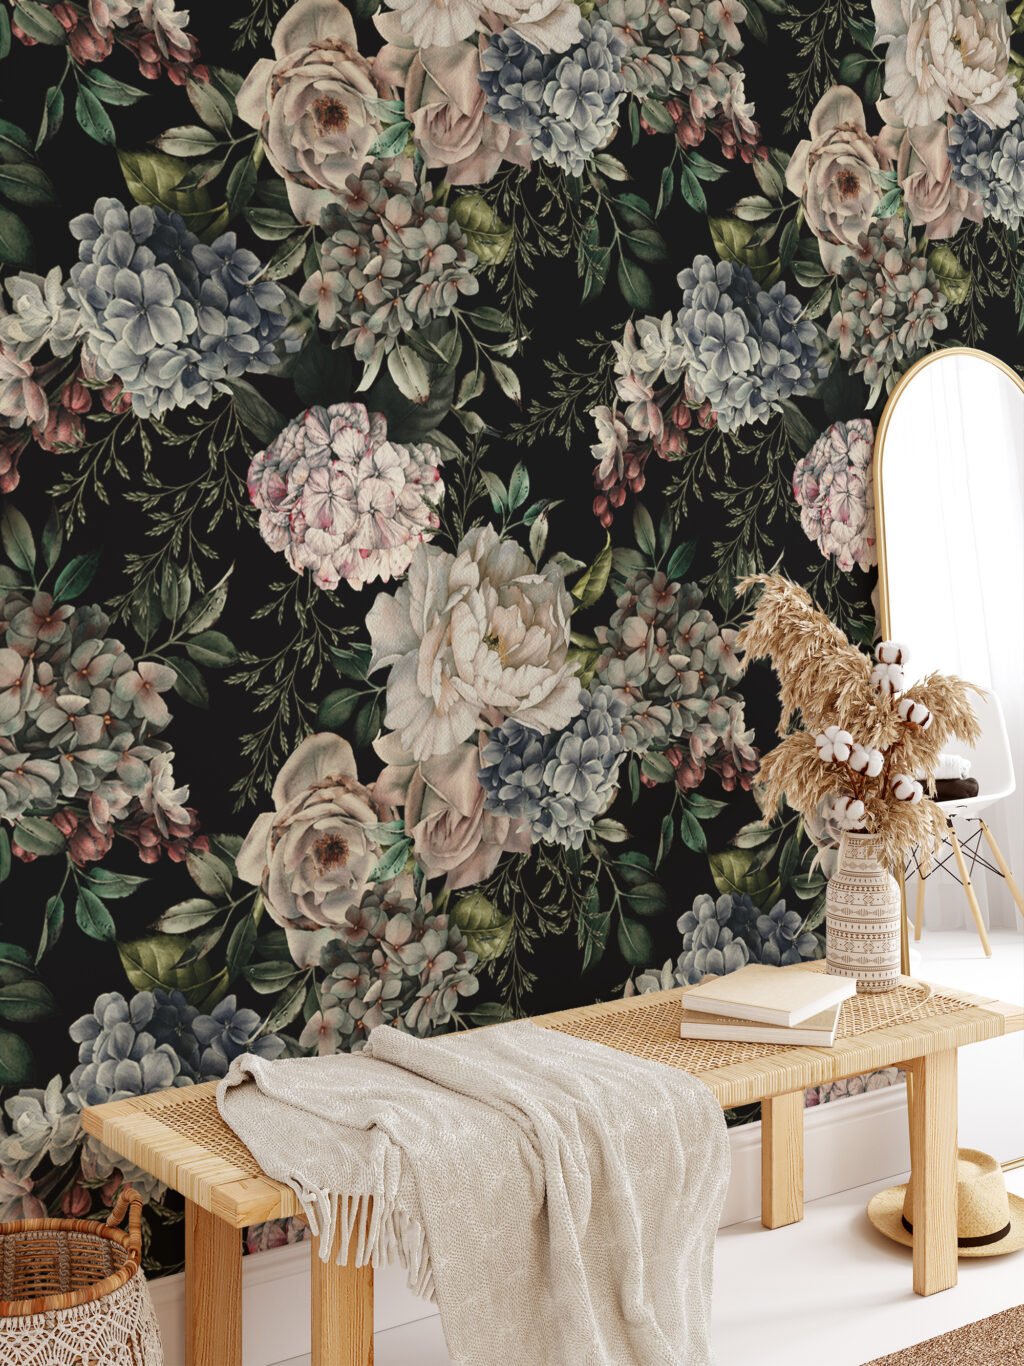 Modern Koyu Temalı Çiçek ve Yapraklar Duvar Kağıdı, Soyut Botanik Desenli Oturma Odası Dekoru için Duvar Posteri Çiçekli Duvar Kağıtları 4